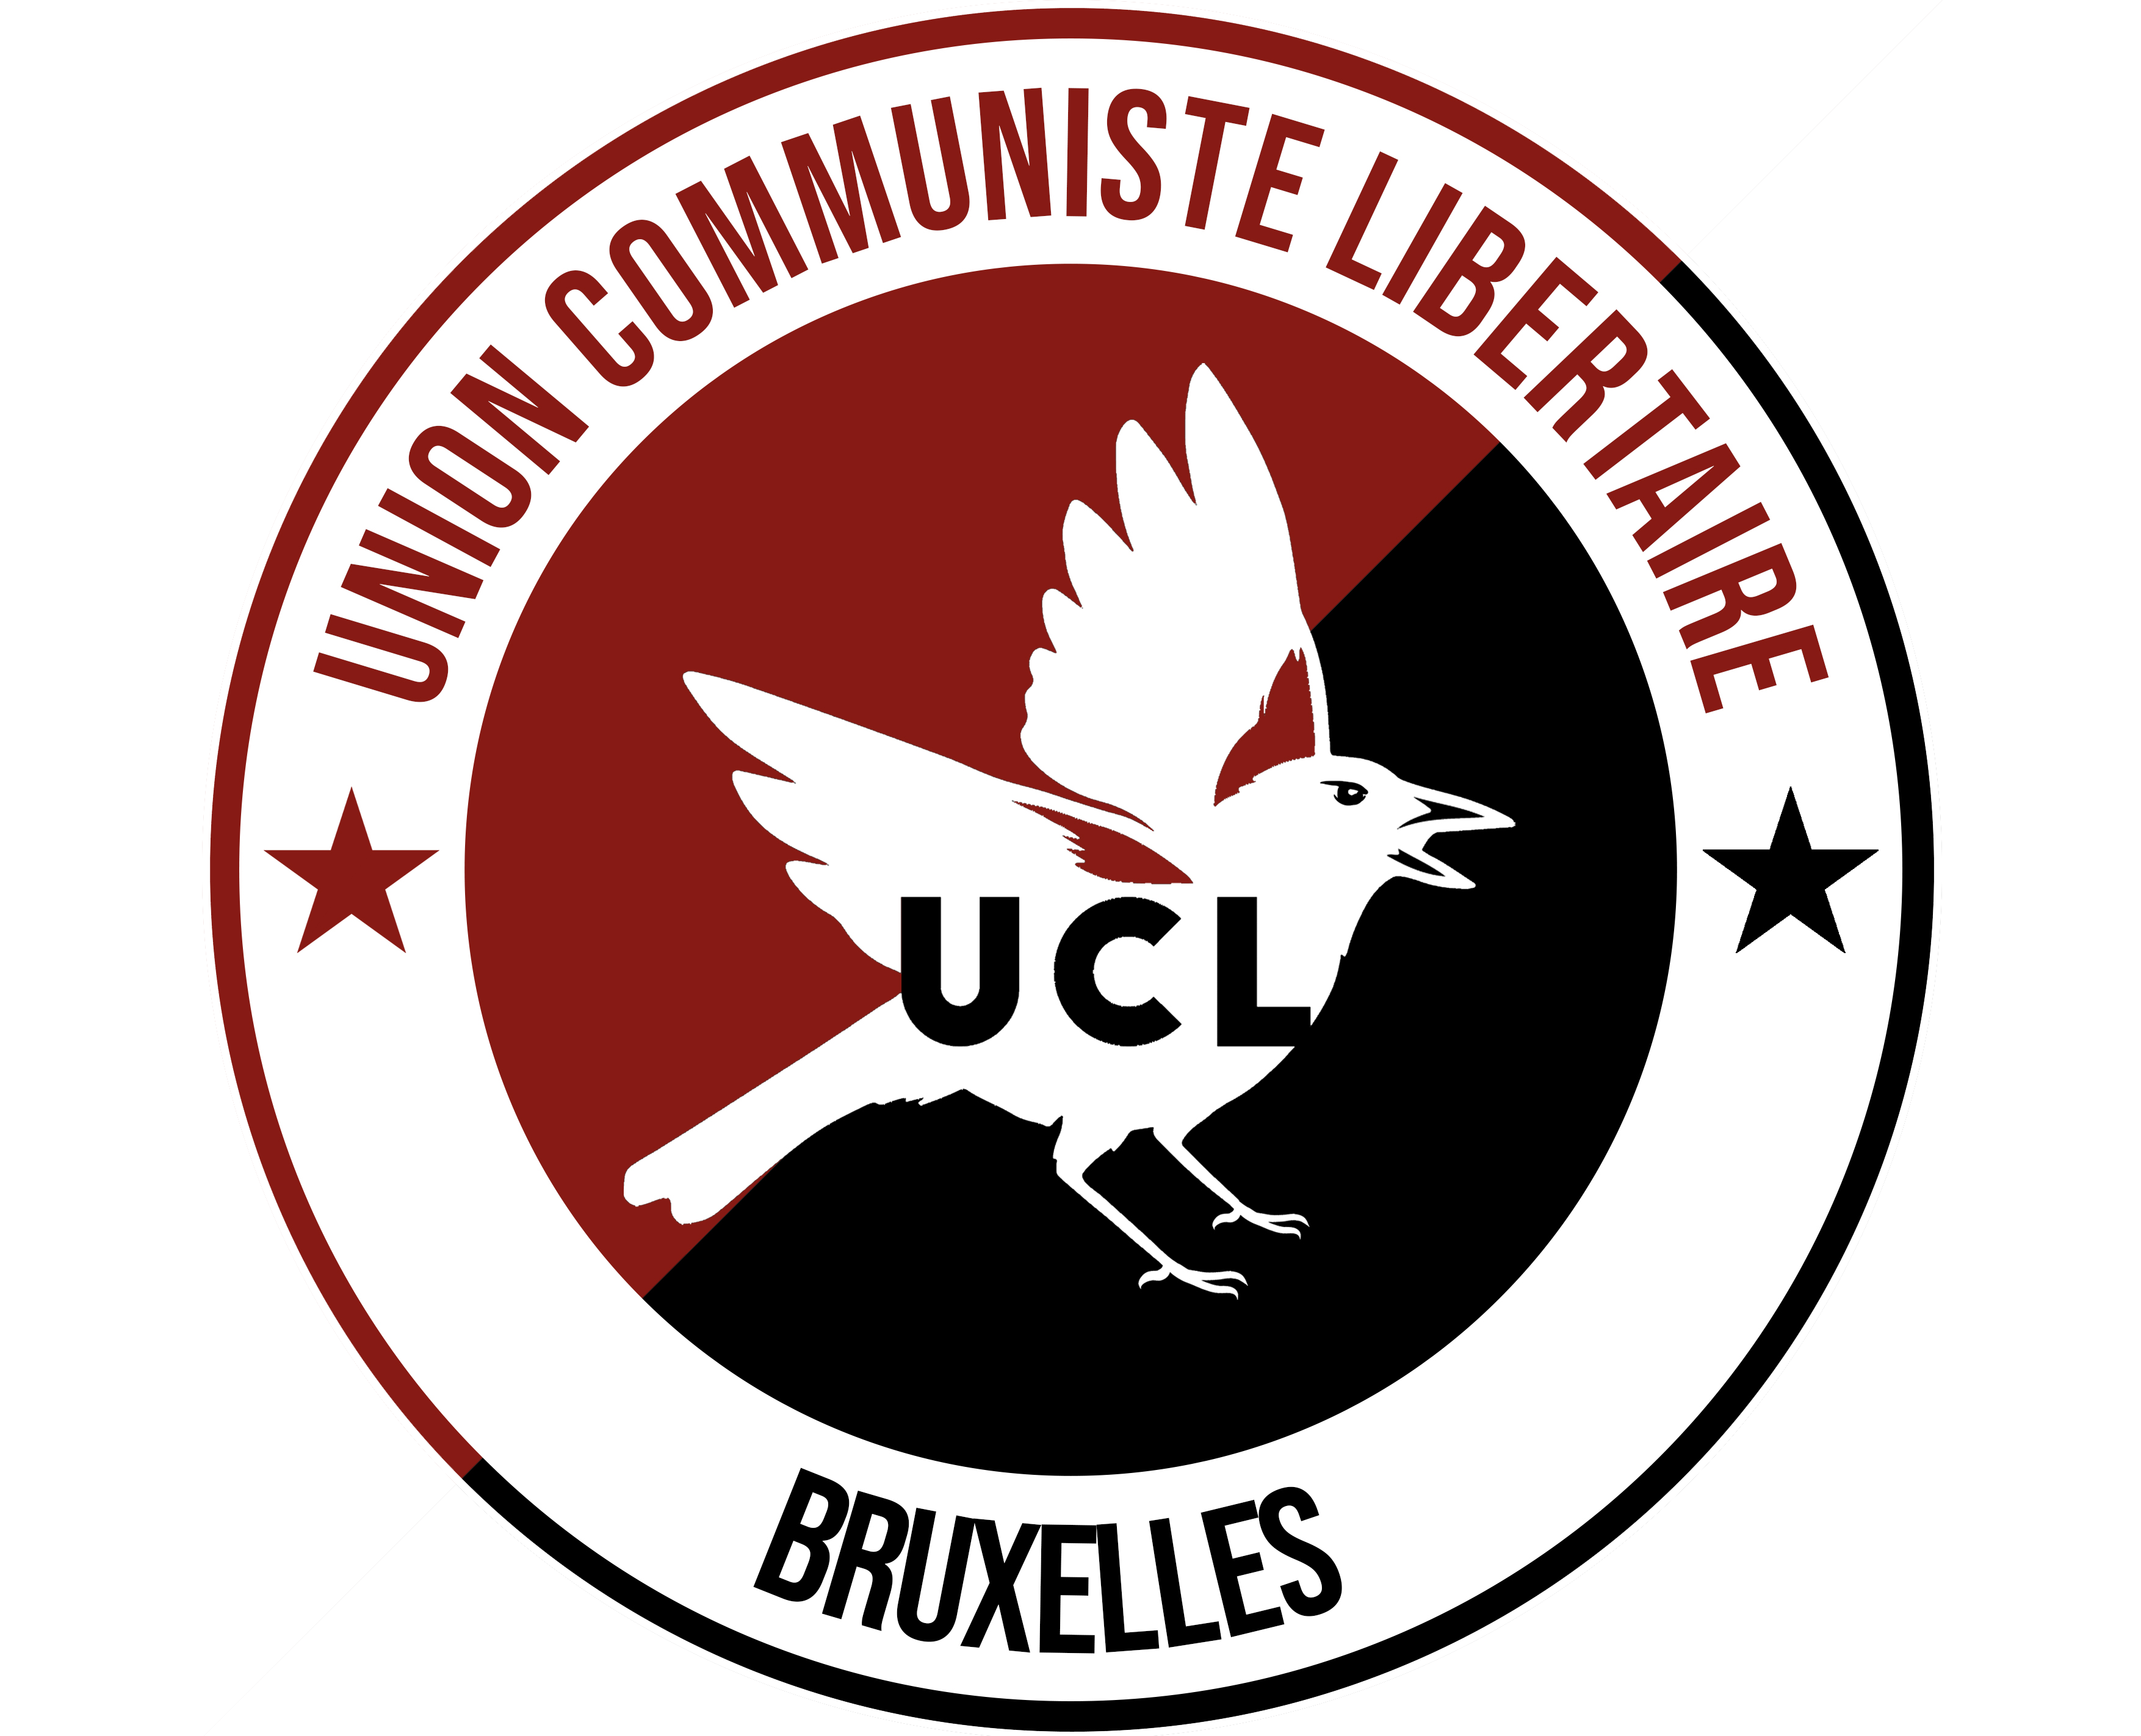 Union Communiste Libertaire Bruxelles